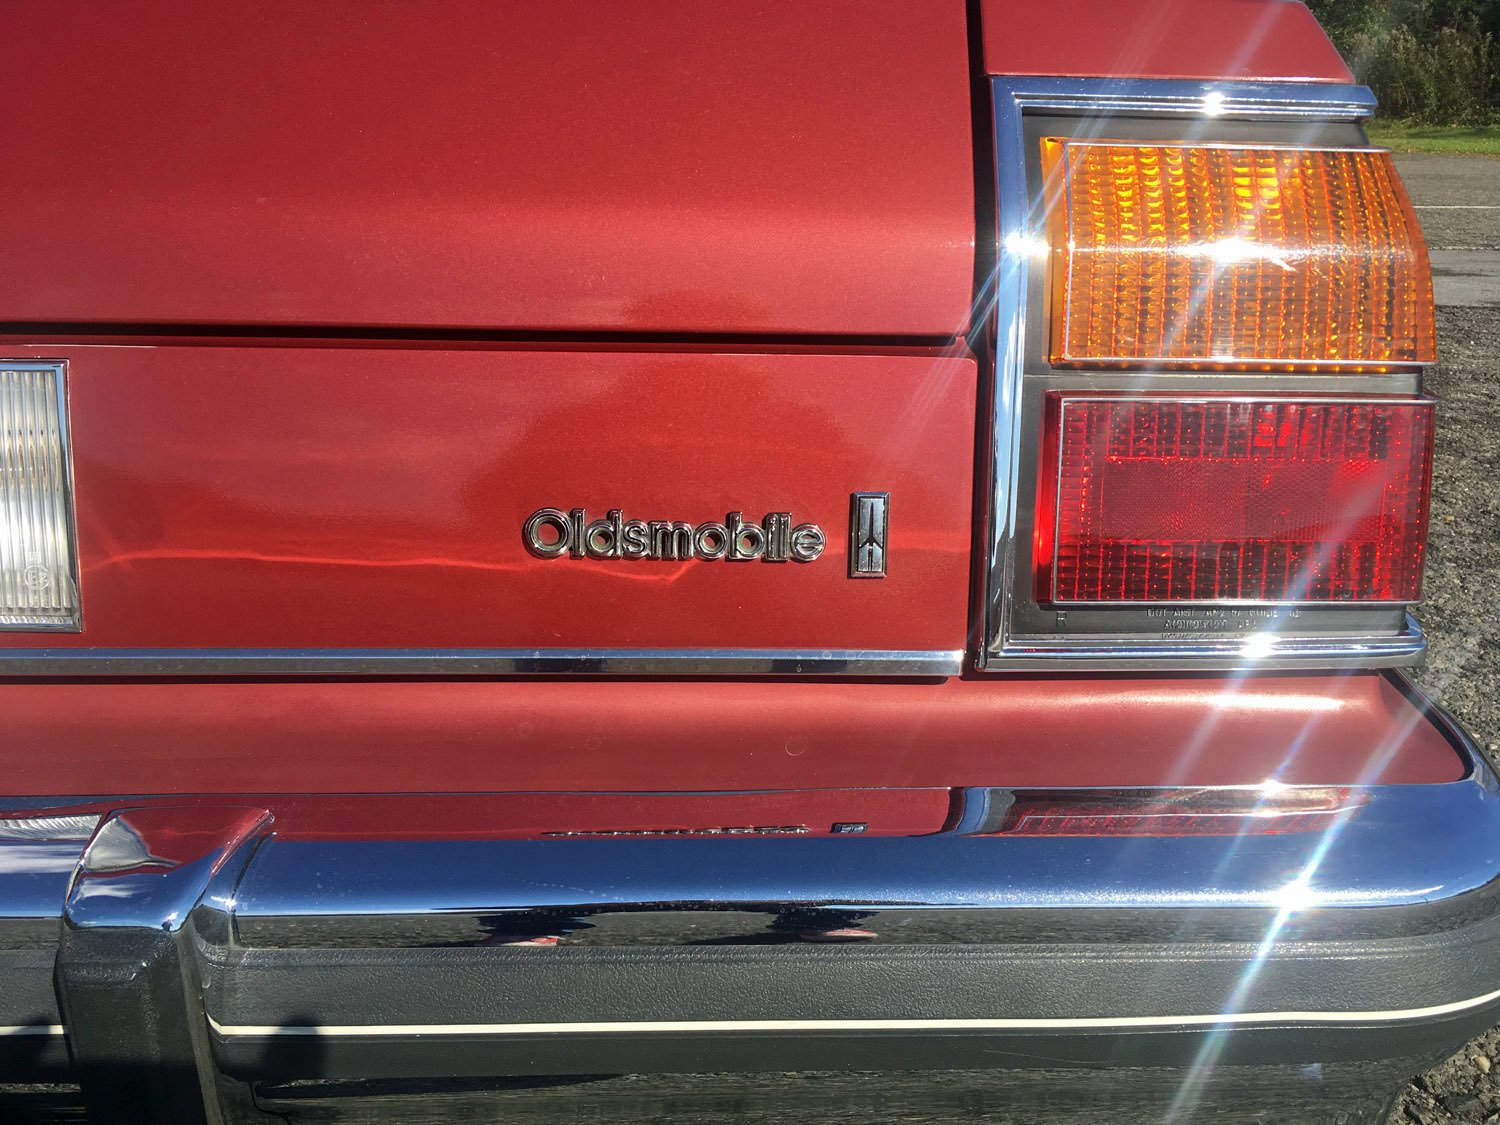 1984 Oldsmobile Delta 88